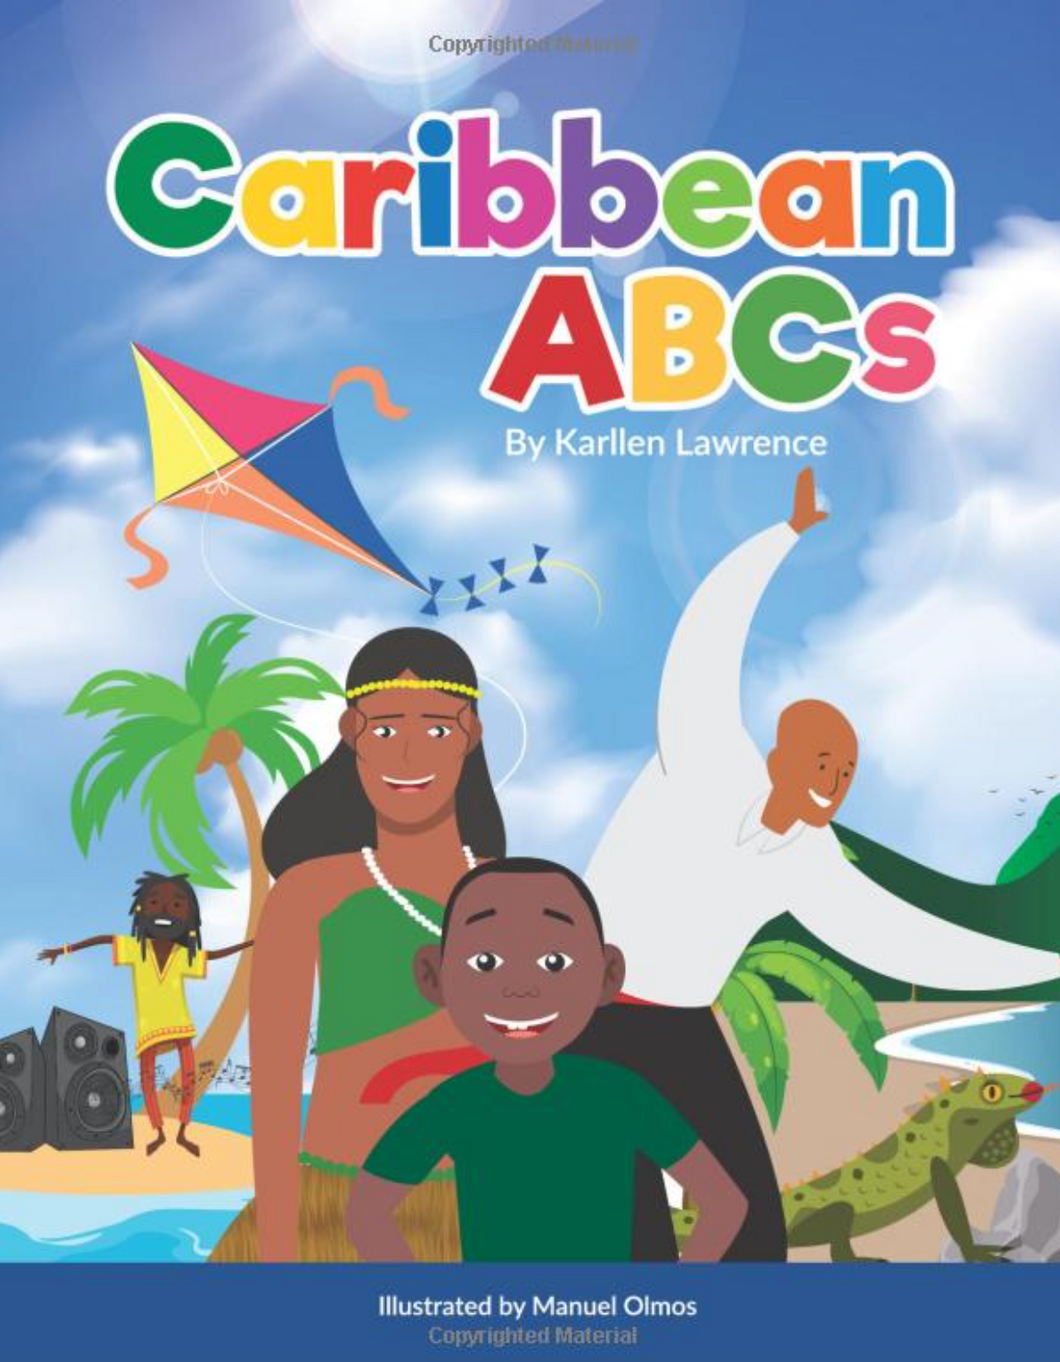 Caribbean ABC's